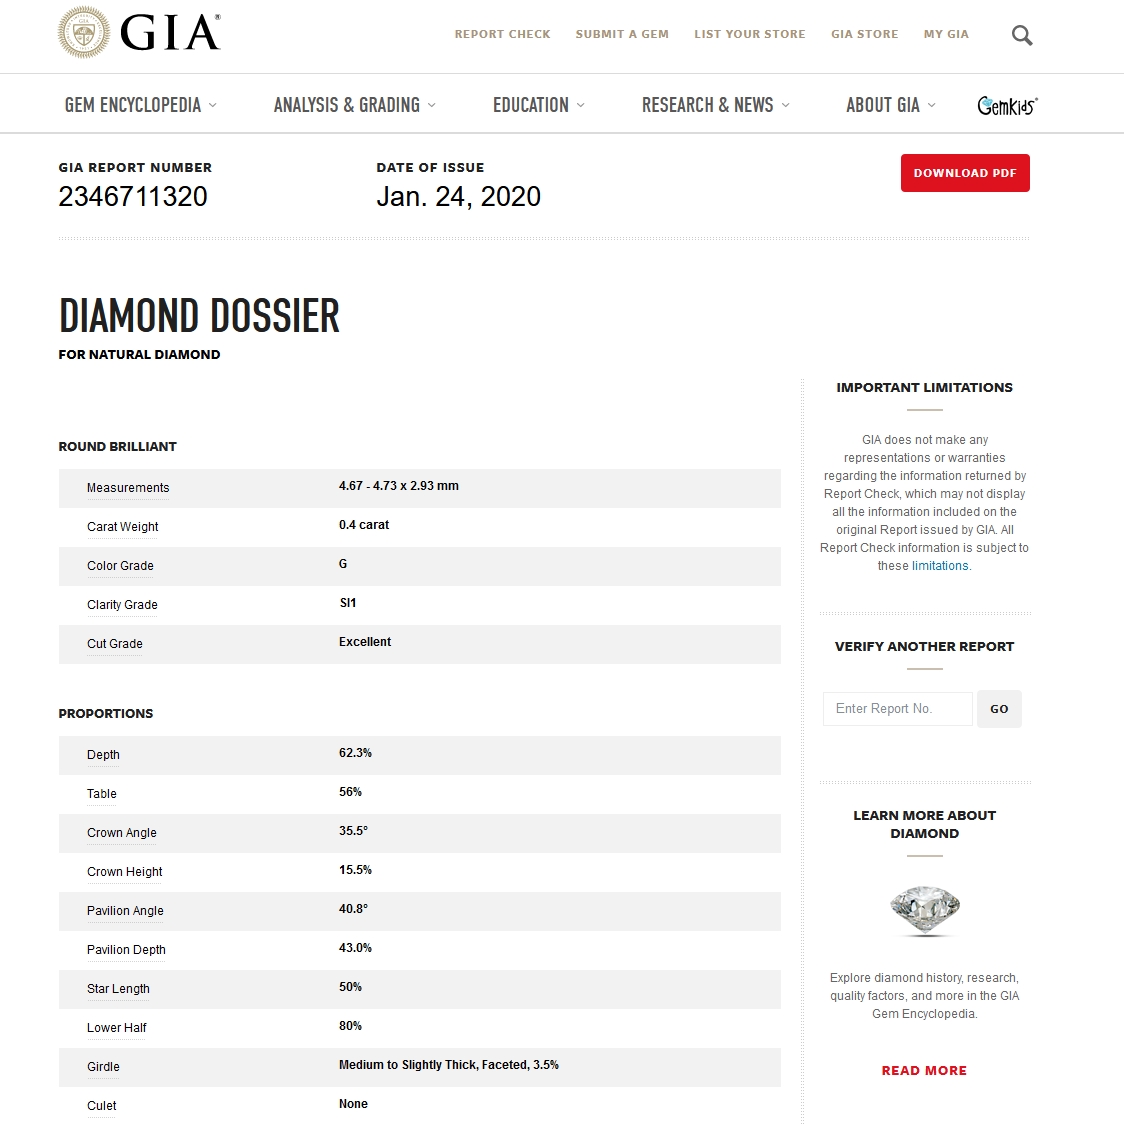 Diamante Naturale Certificato GIA Kt. 0,40 Colore G Purezza SI1